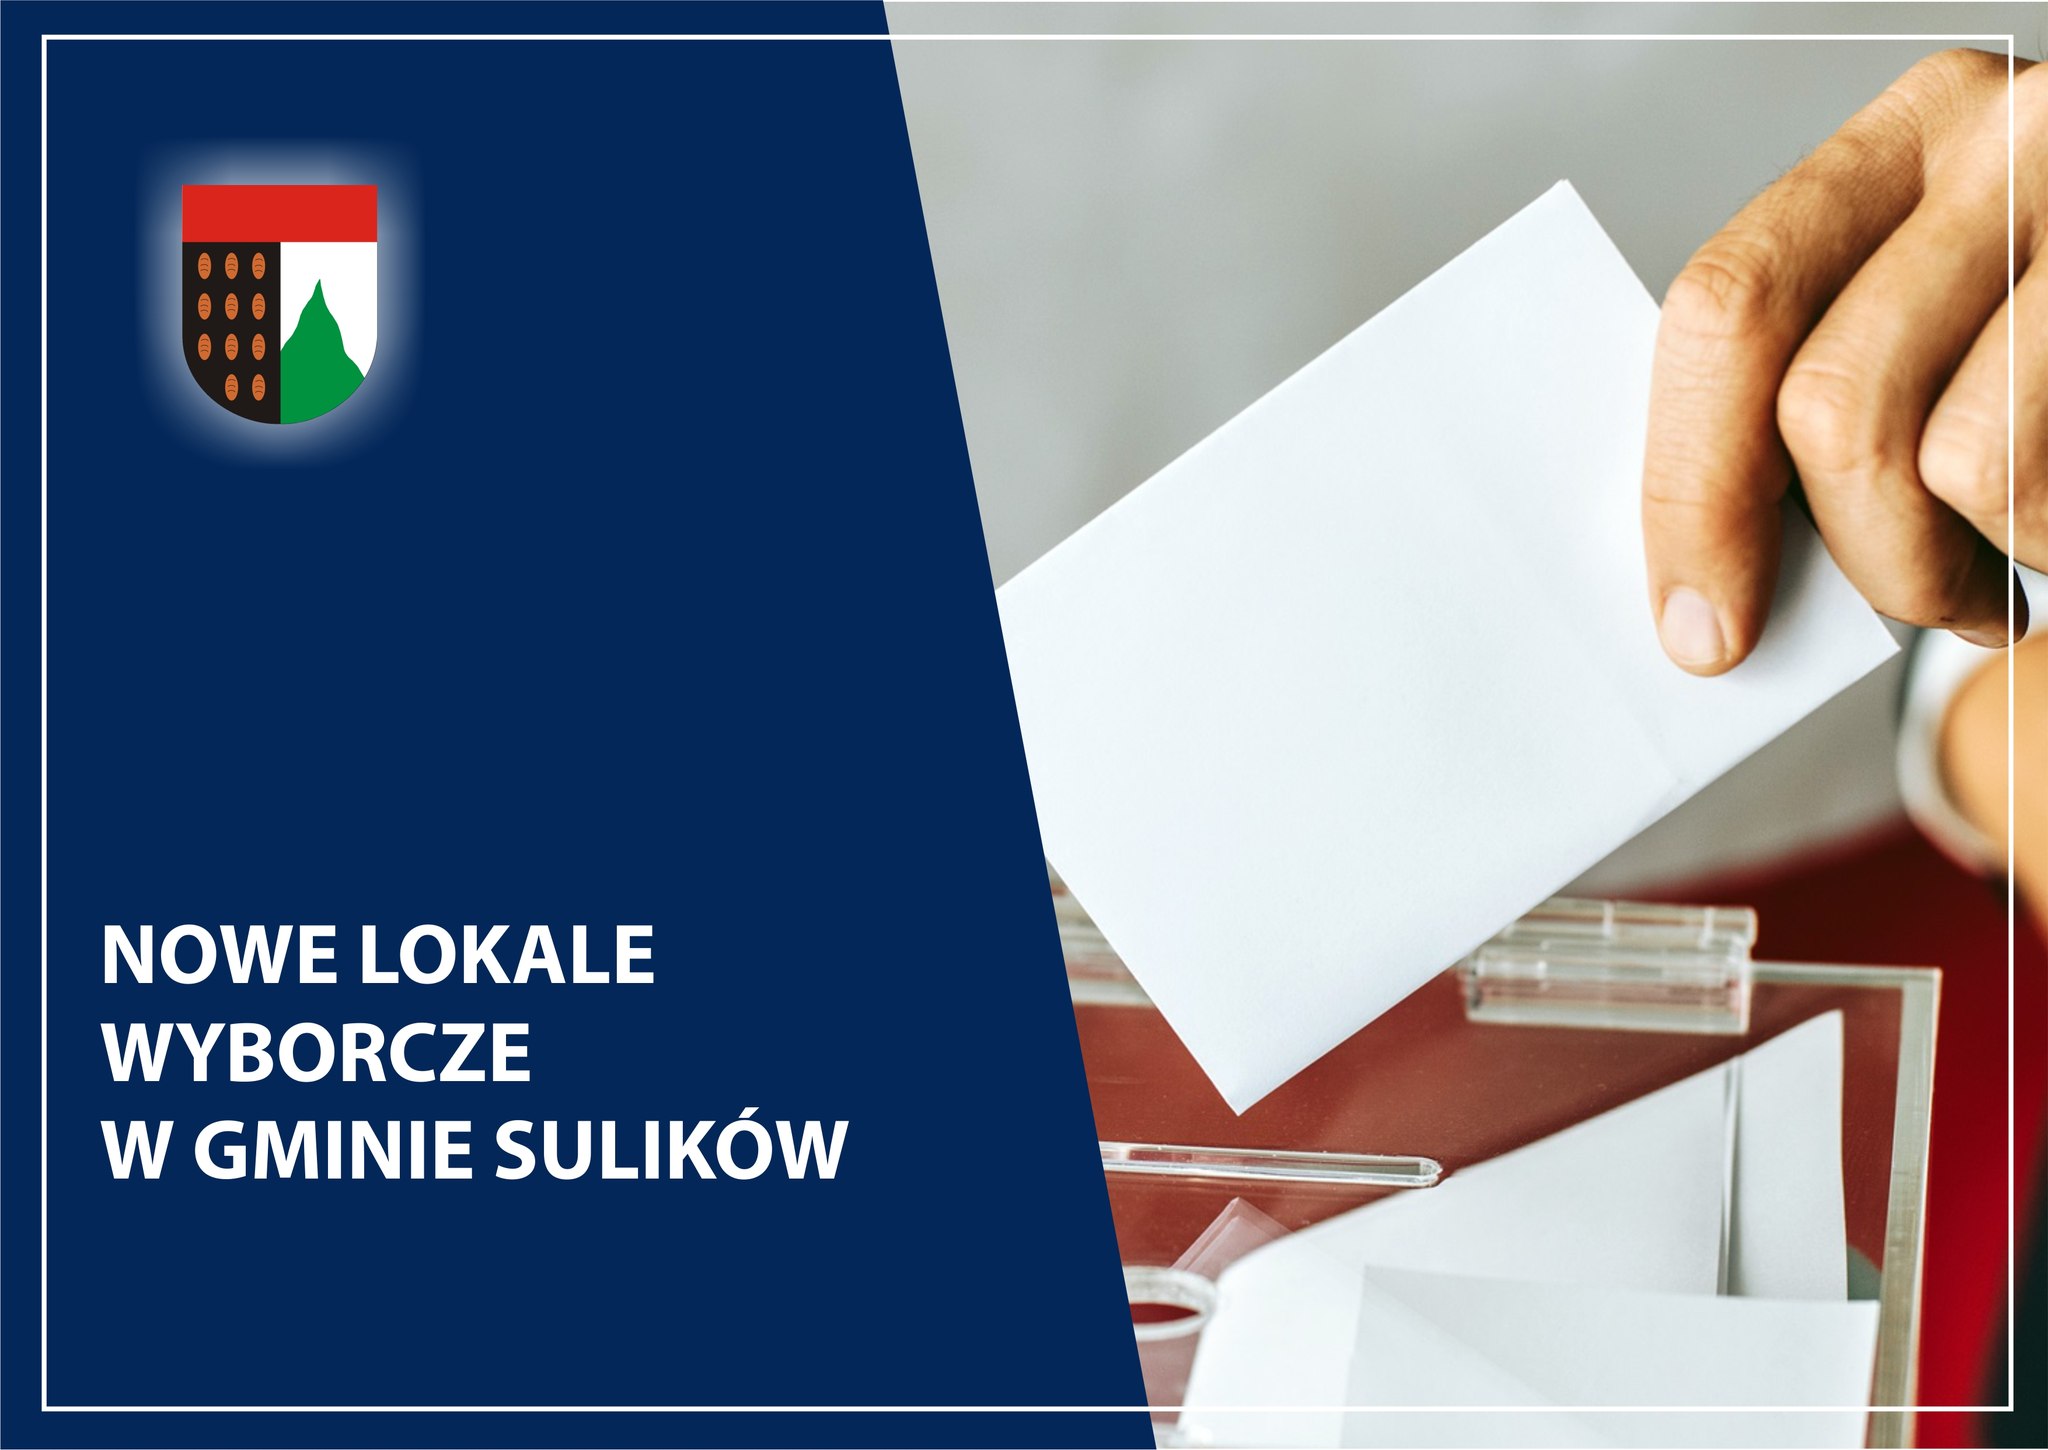 You are currently viewing SULIKÓW – Pięć nowych lokali wyborczych w gminie